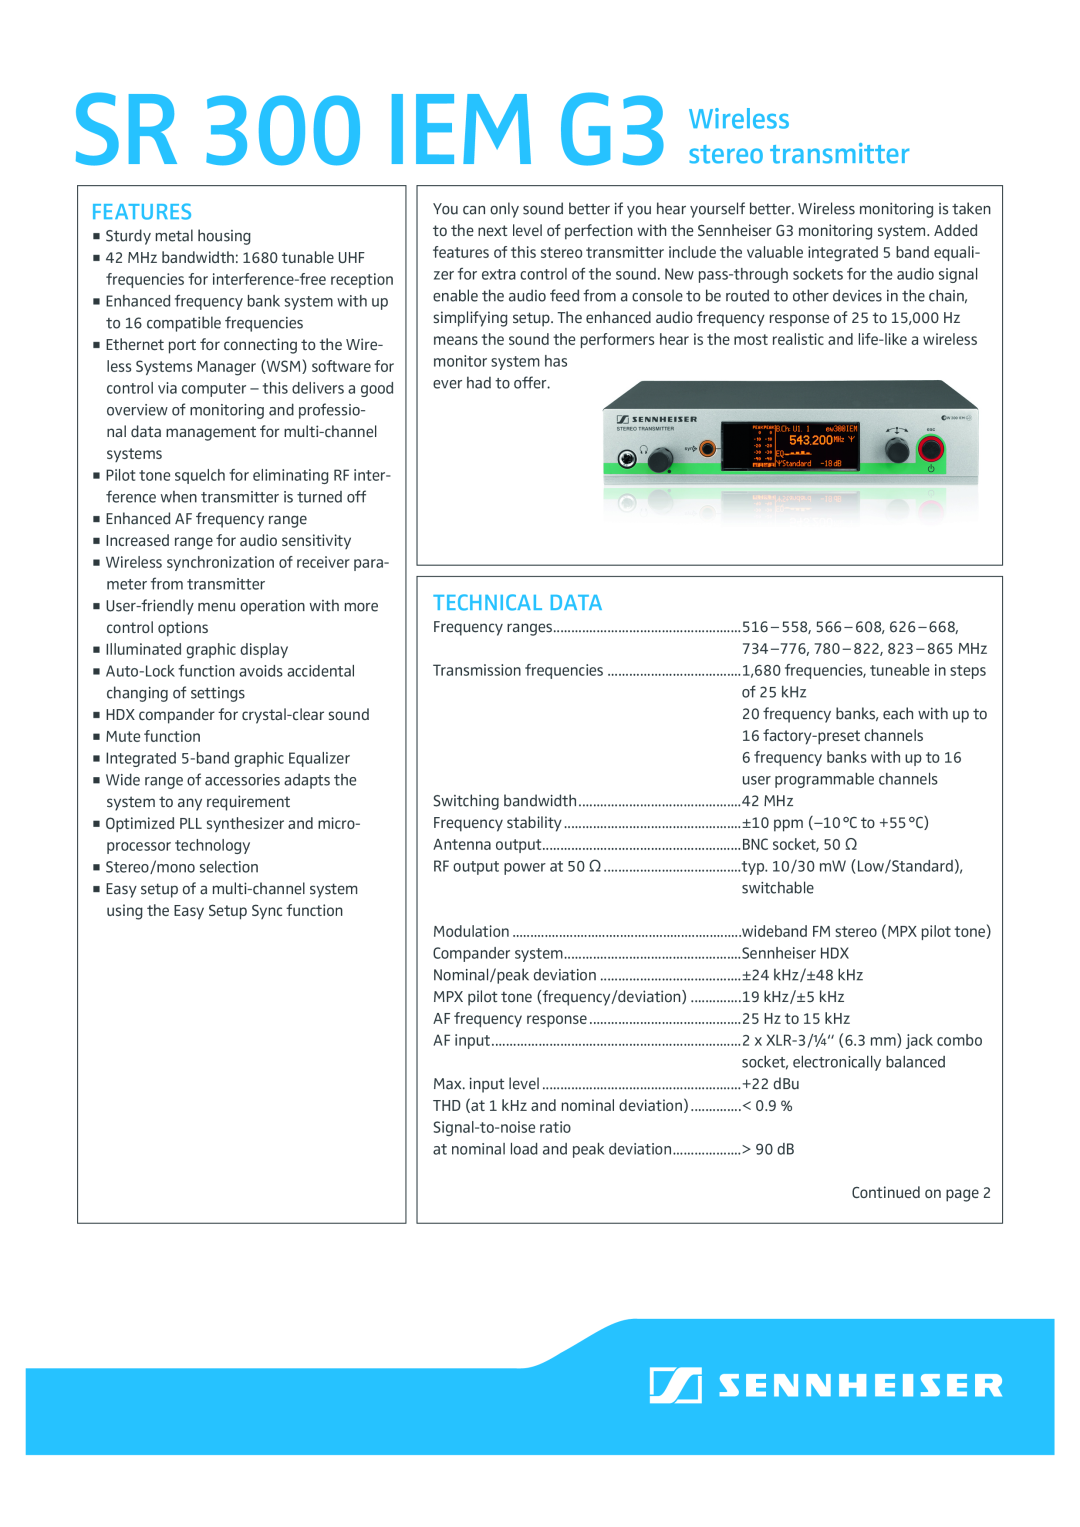 Sennheiser manual Features, Technical Data, SR 300 IEM G3 Wireless, stereo transmitter 